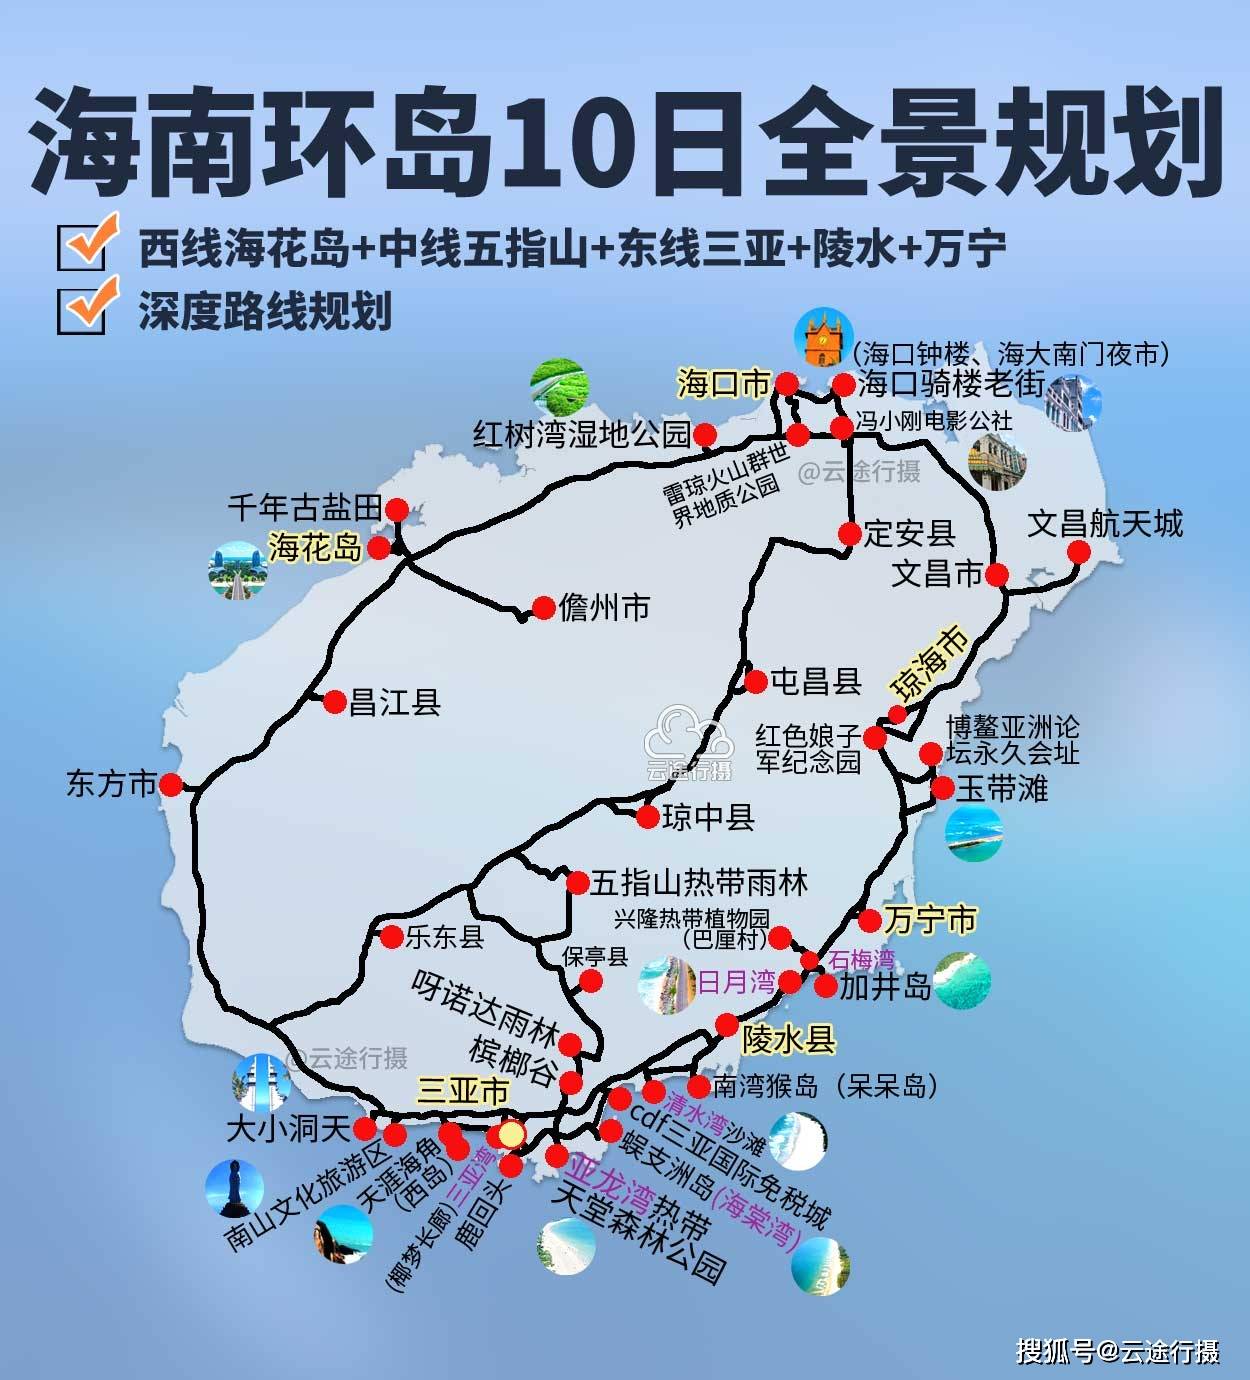 海南环岛10日全景旅游攻略路线图(原创),海南环岛自驾游